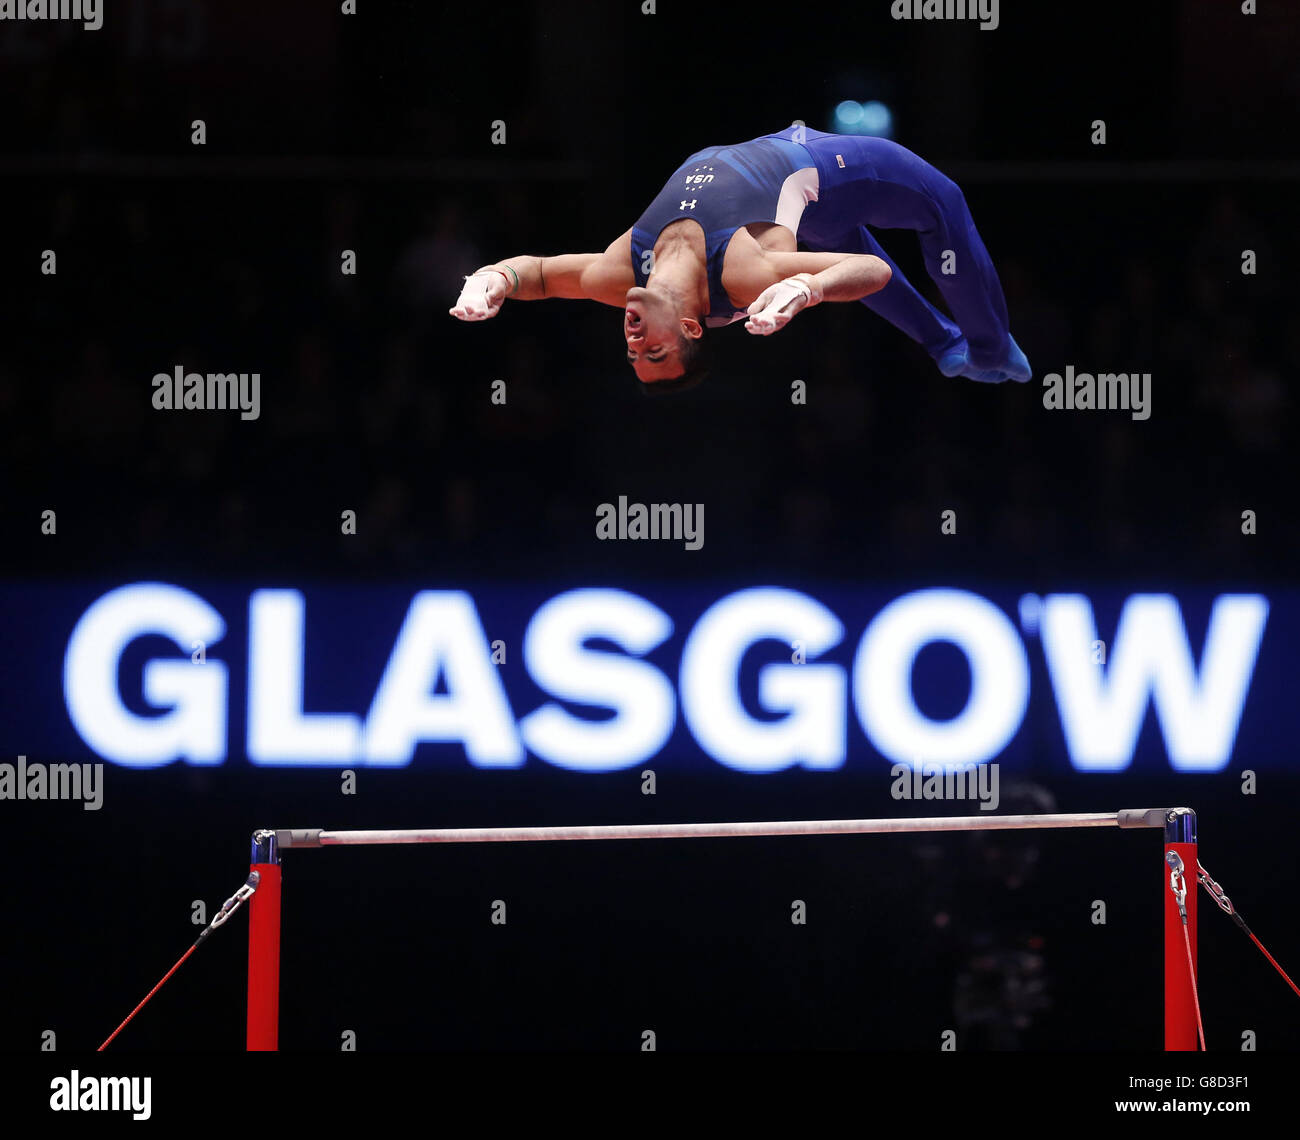 Gymnastik - Weltmeisterschaften 2015 - Tag vier - das SSE Hydro. Danell Leyva aus den USA tritt am vierten Tag der Weltgymnastik-Weltmeisterschaften 2015 bei der SSE Hydro in Glasgow an der Horizontalen Bar an. Stockfoto